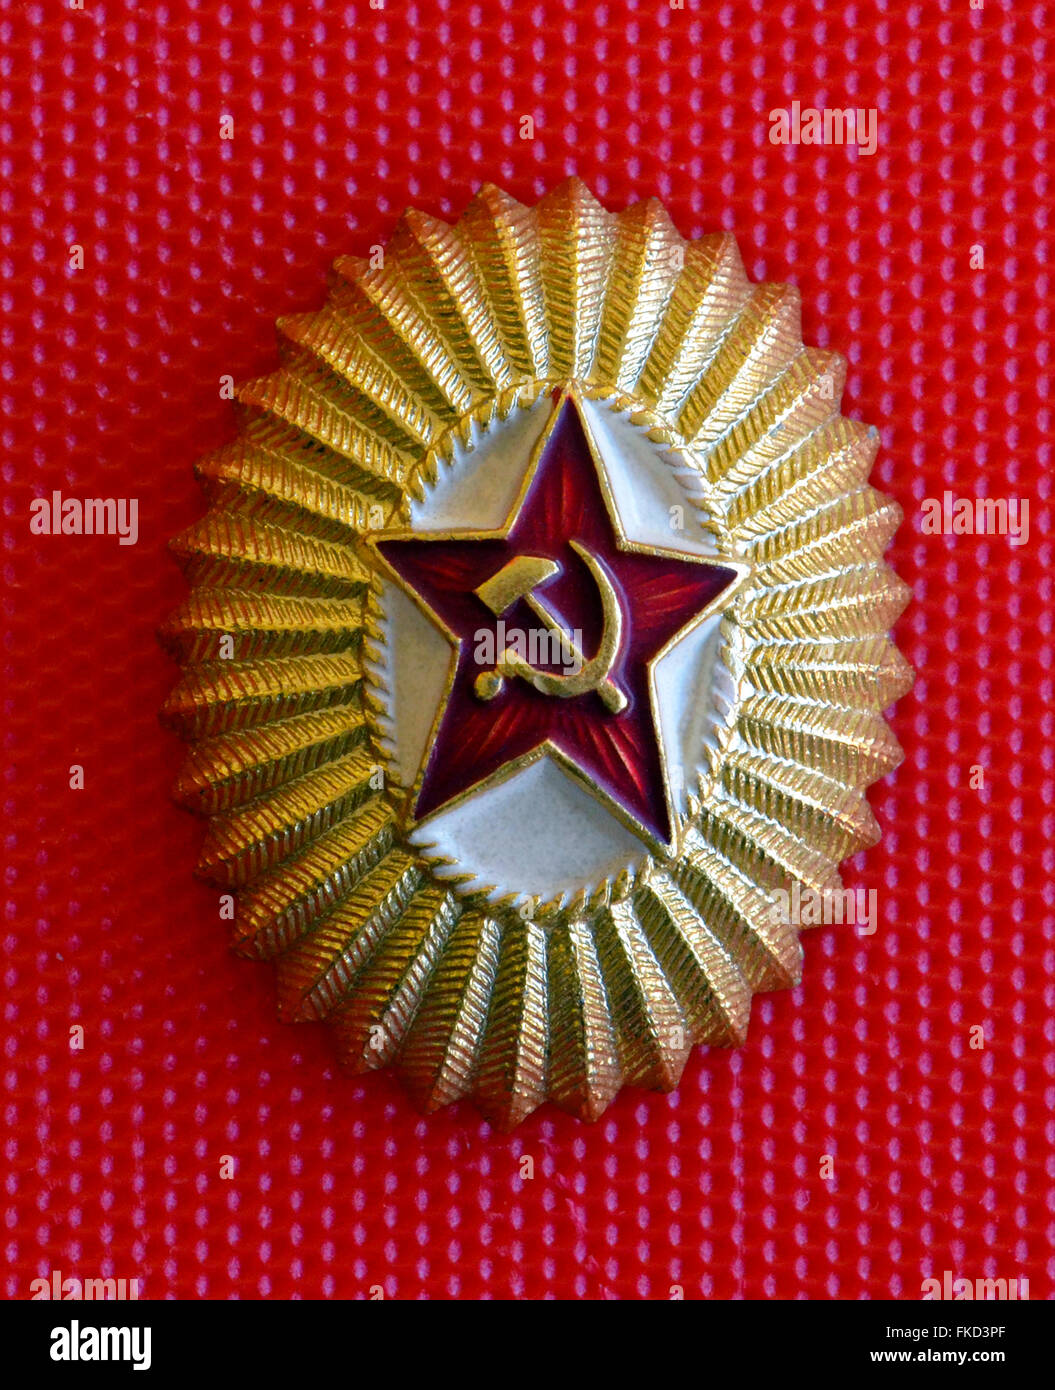 Eine beliebte Abzeichen der Sowjetunion zeigt einen roten Stern mit Hammer und Sichel, eine kommunistische Symbol für die russische Revolution von 1917 erstellt. Es wurde eine amerikanische Besucher in der UdSSR (Union der Sozialistischen Sowjetrepubliken) im Jahr 1962 während des Kalten Krieges gegeben. Dieses ovale leichte Metall-Emblem misst 1-3/16 Zoll in der kurzen Dimension von 1-7/16 Zoll in der langen Dimension. Stockfoto